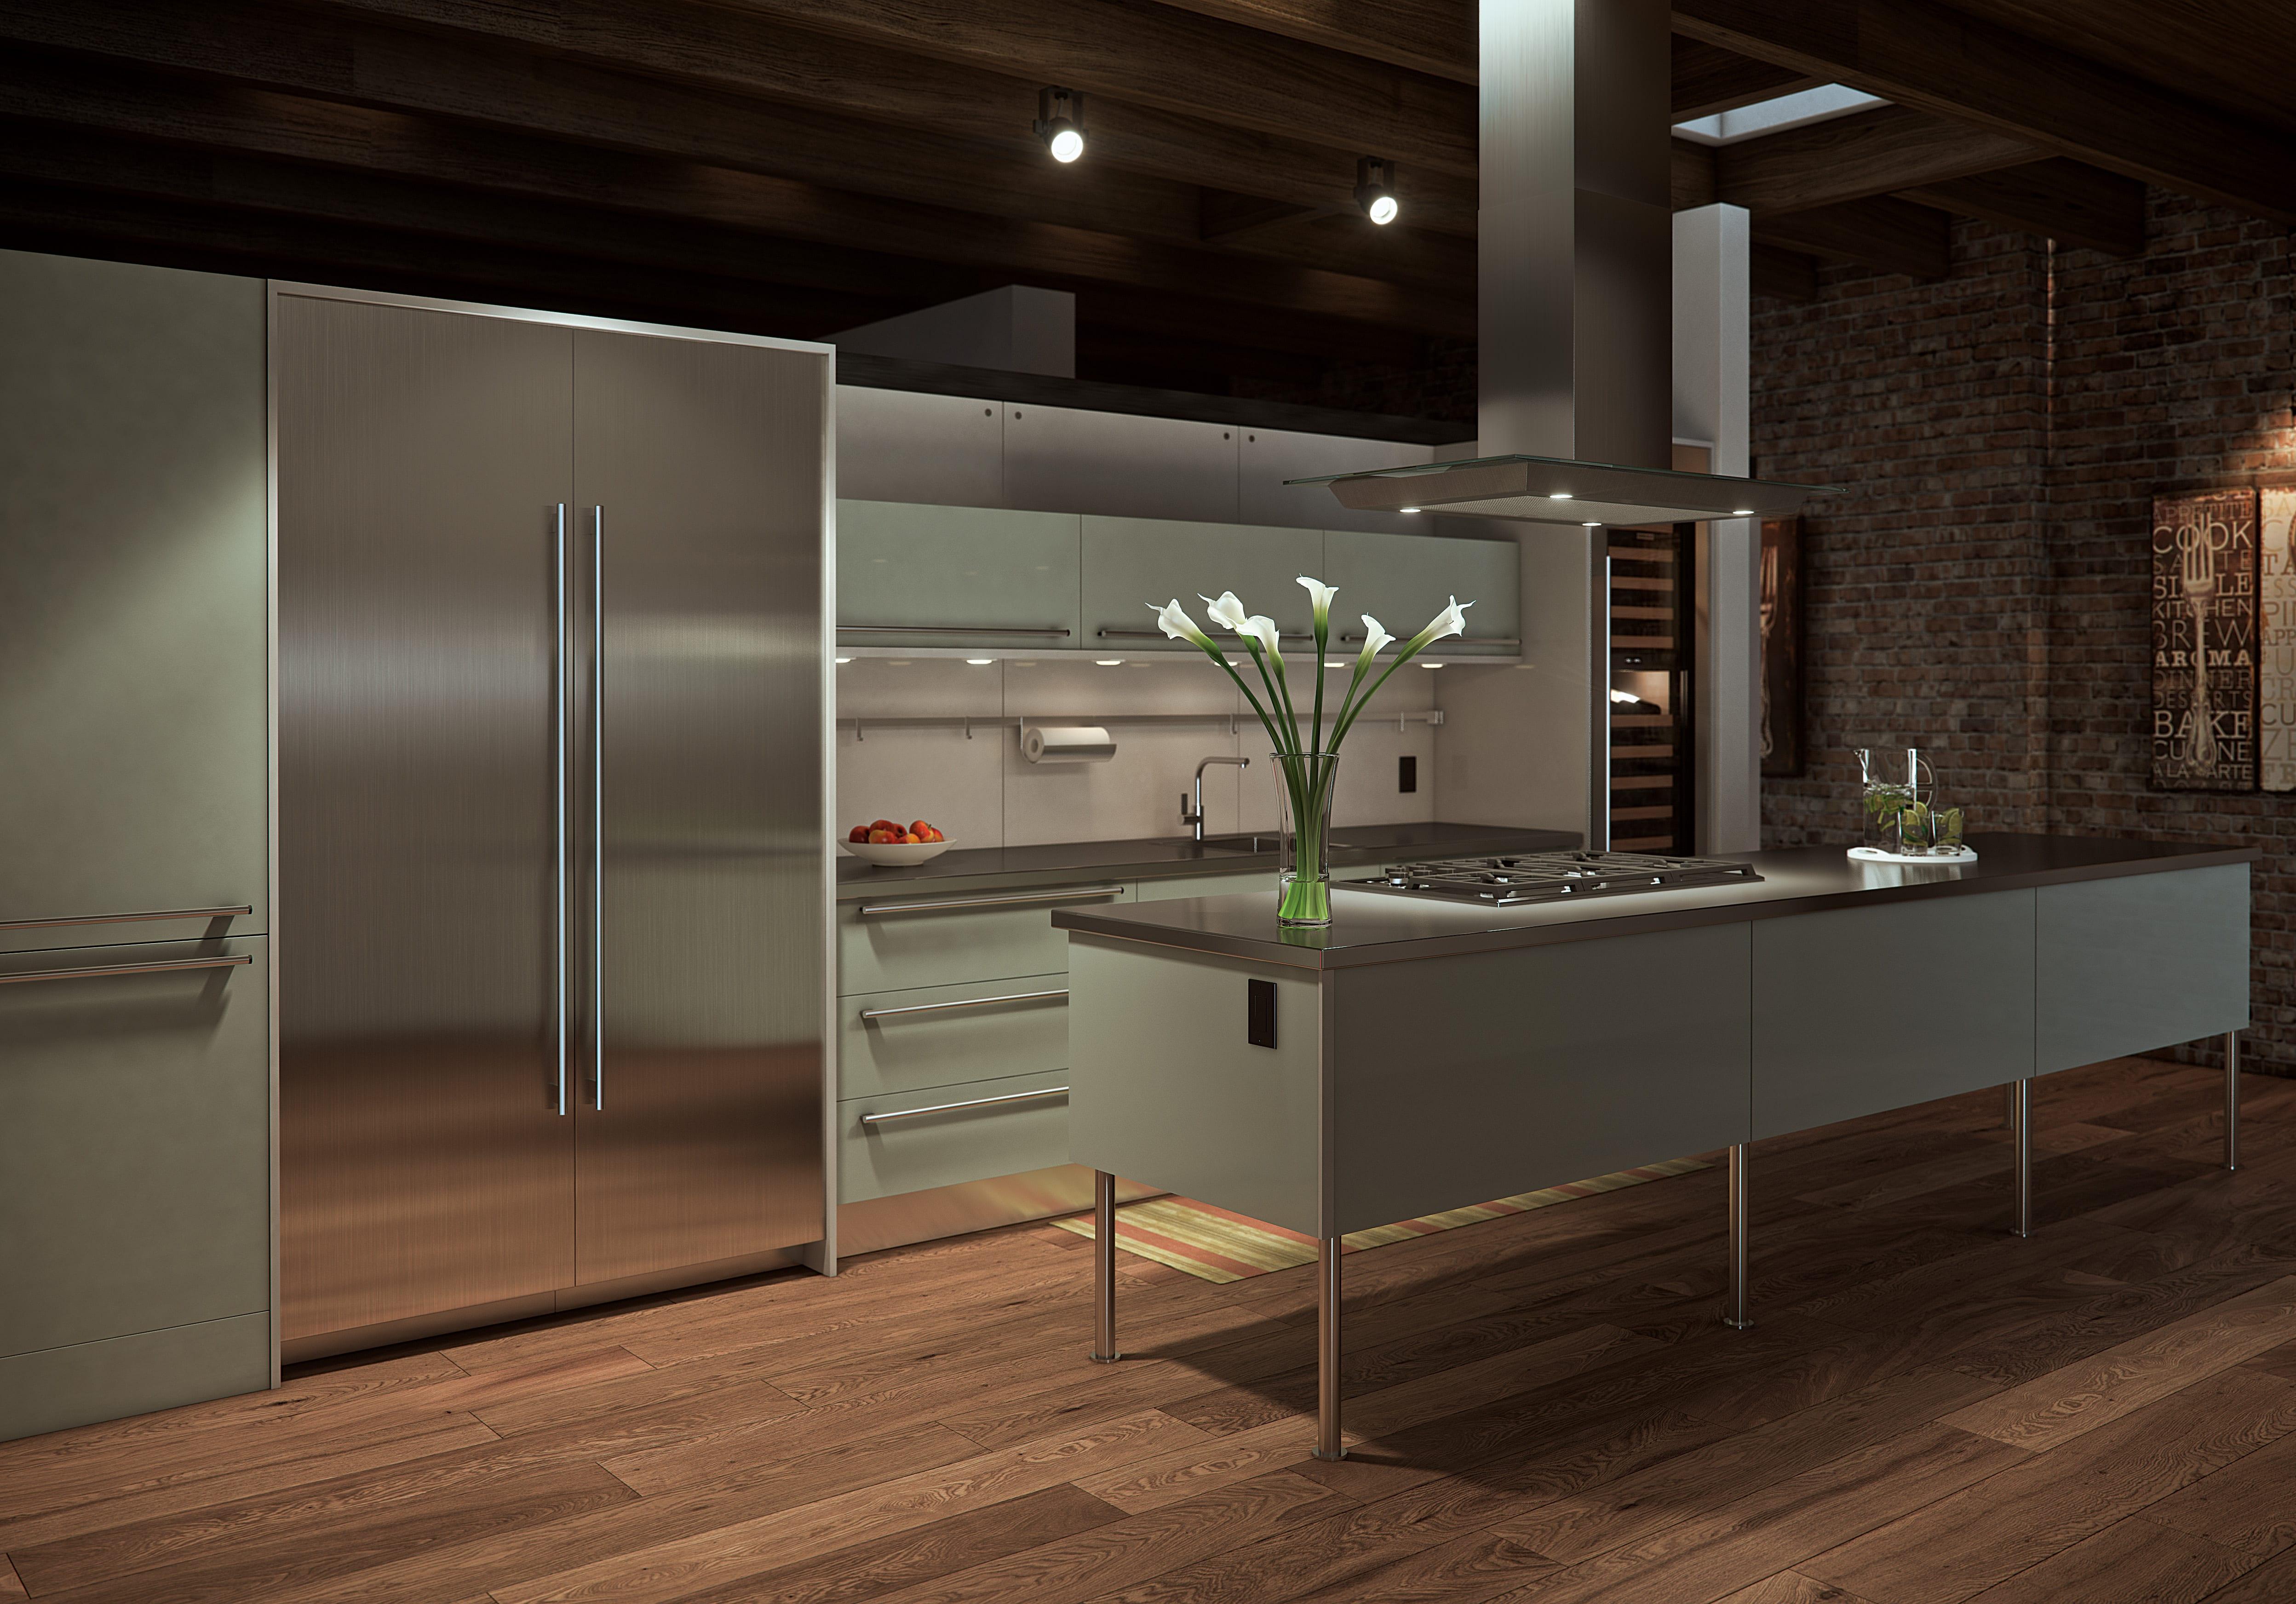 SubZero integriertes Kühlgerät #küche #kühlschrank ©SubZero